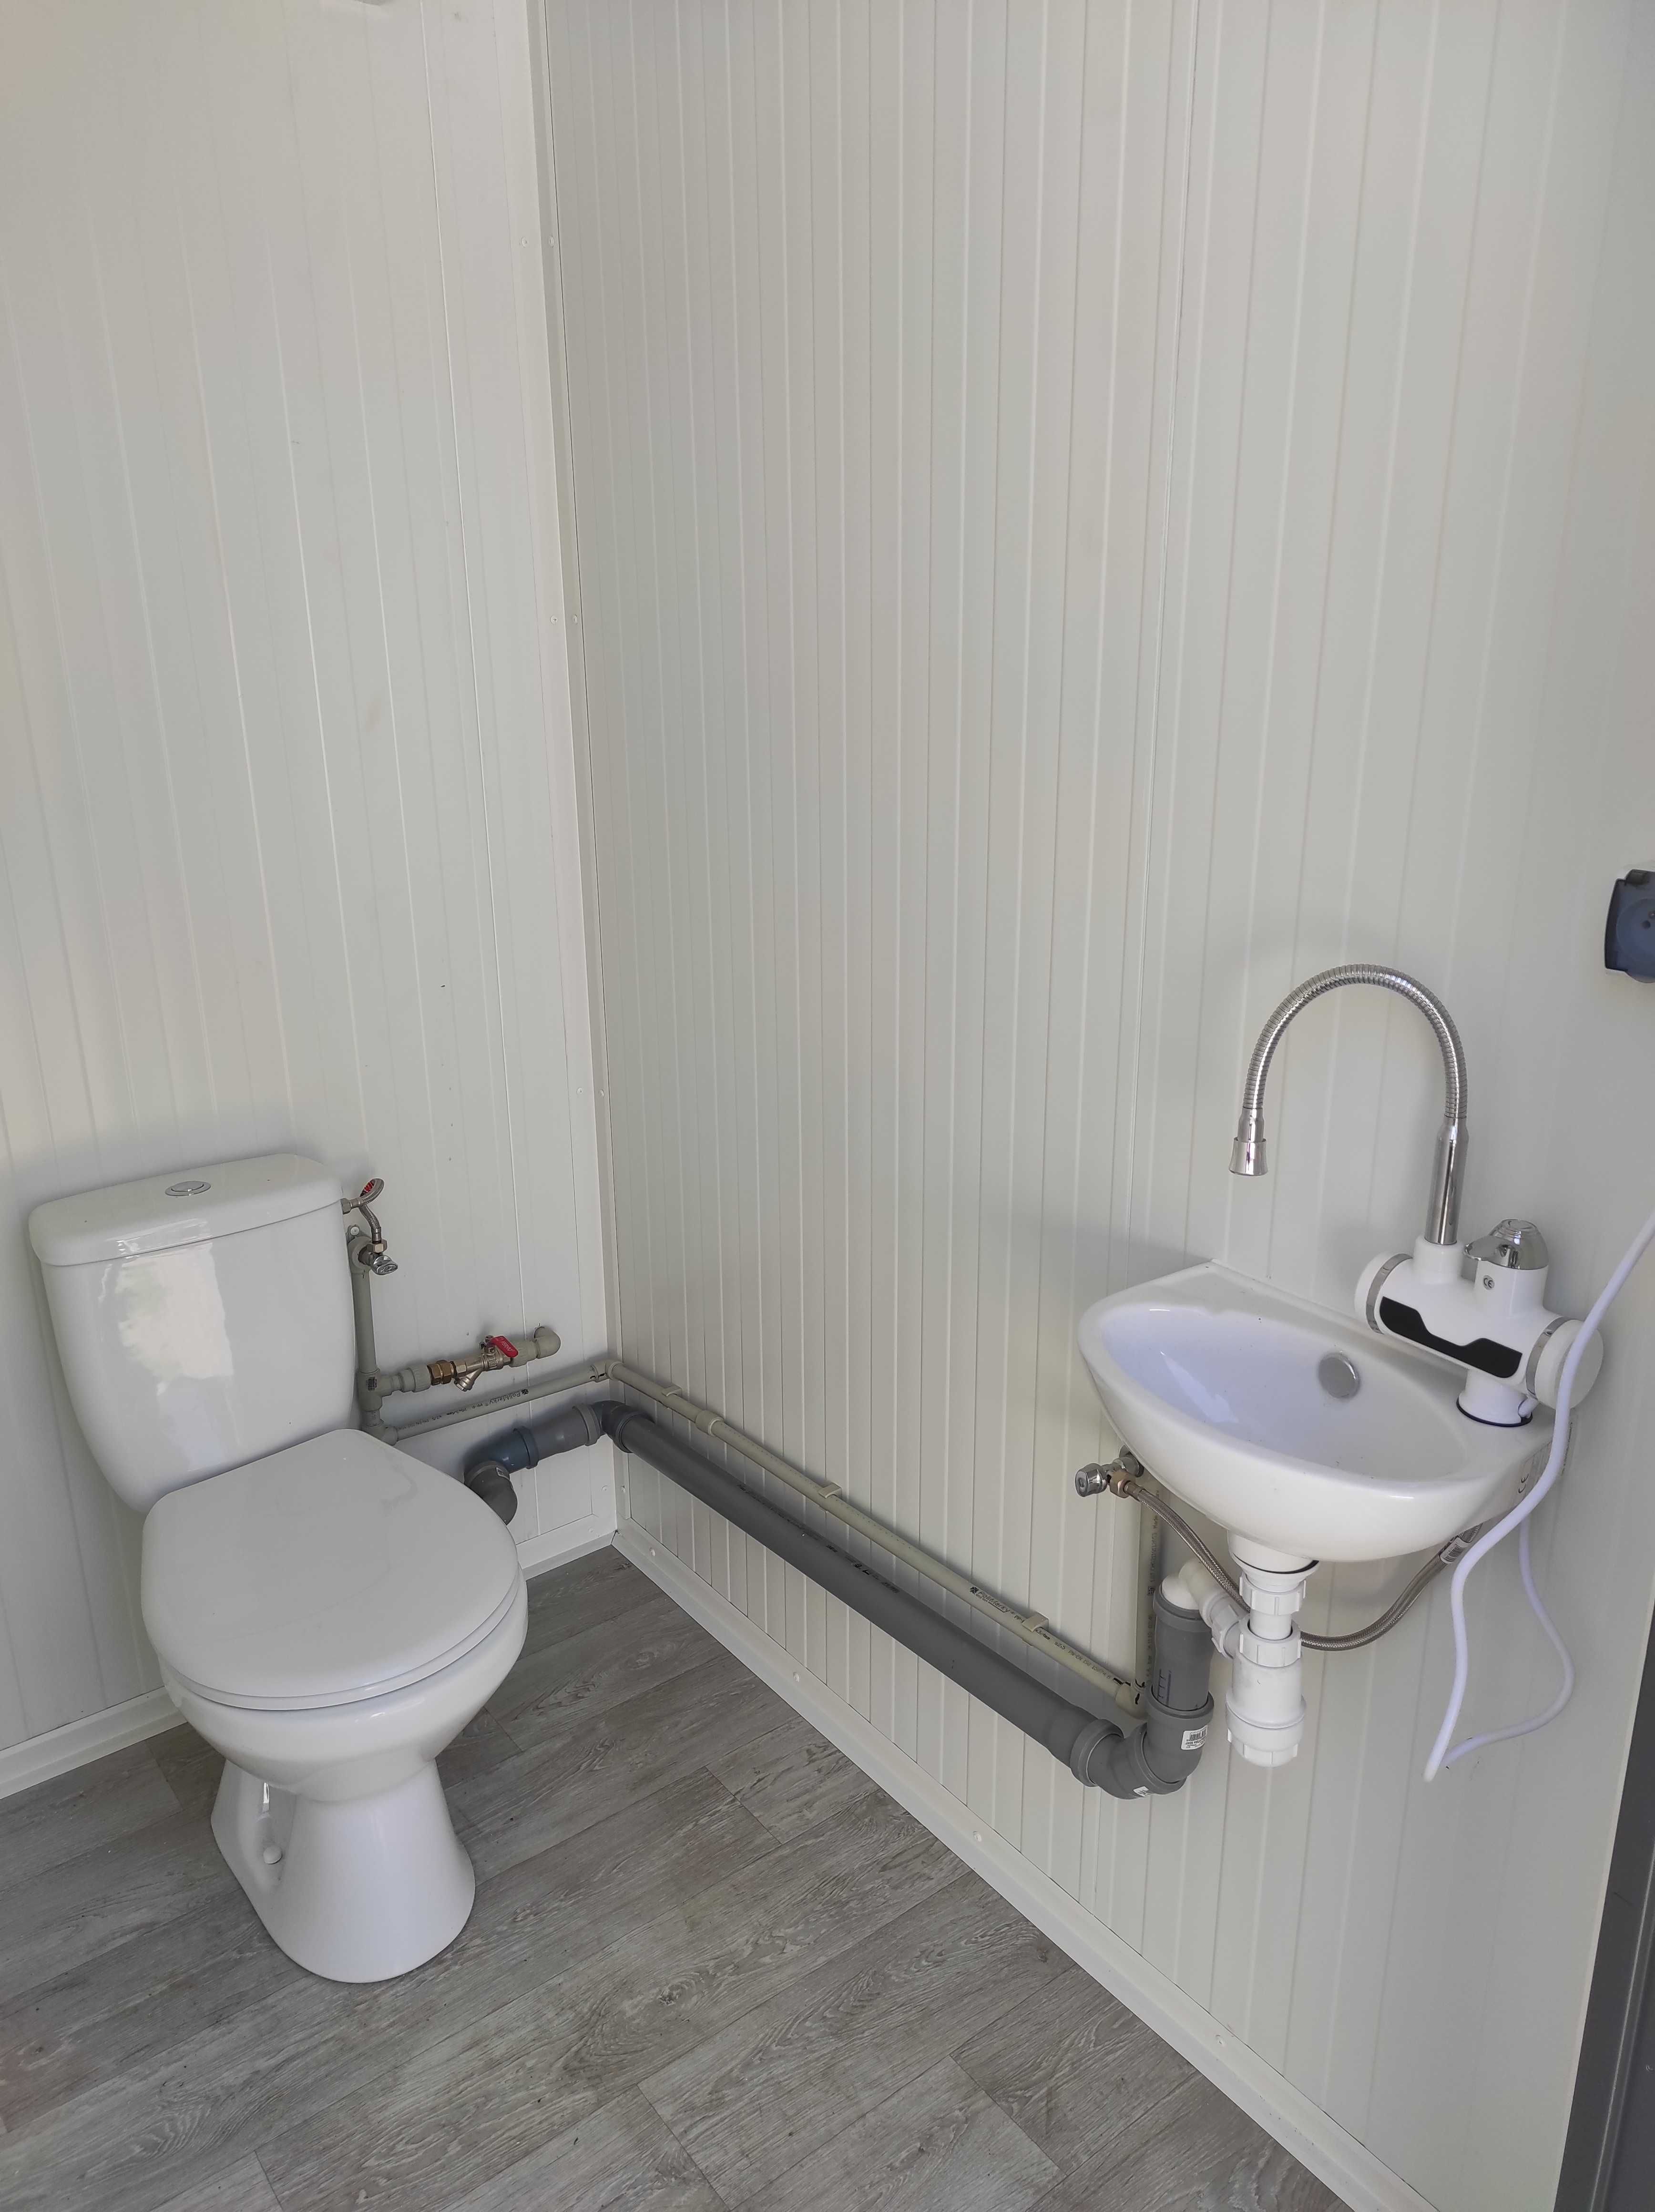 Kontener sanitarny WC/biurowy/stróżówka